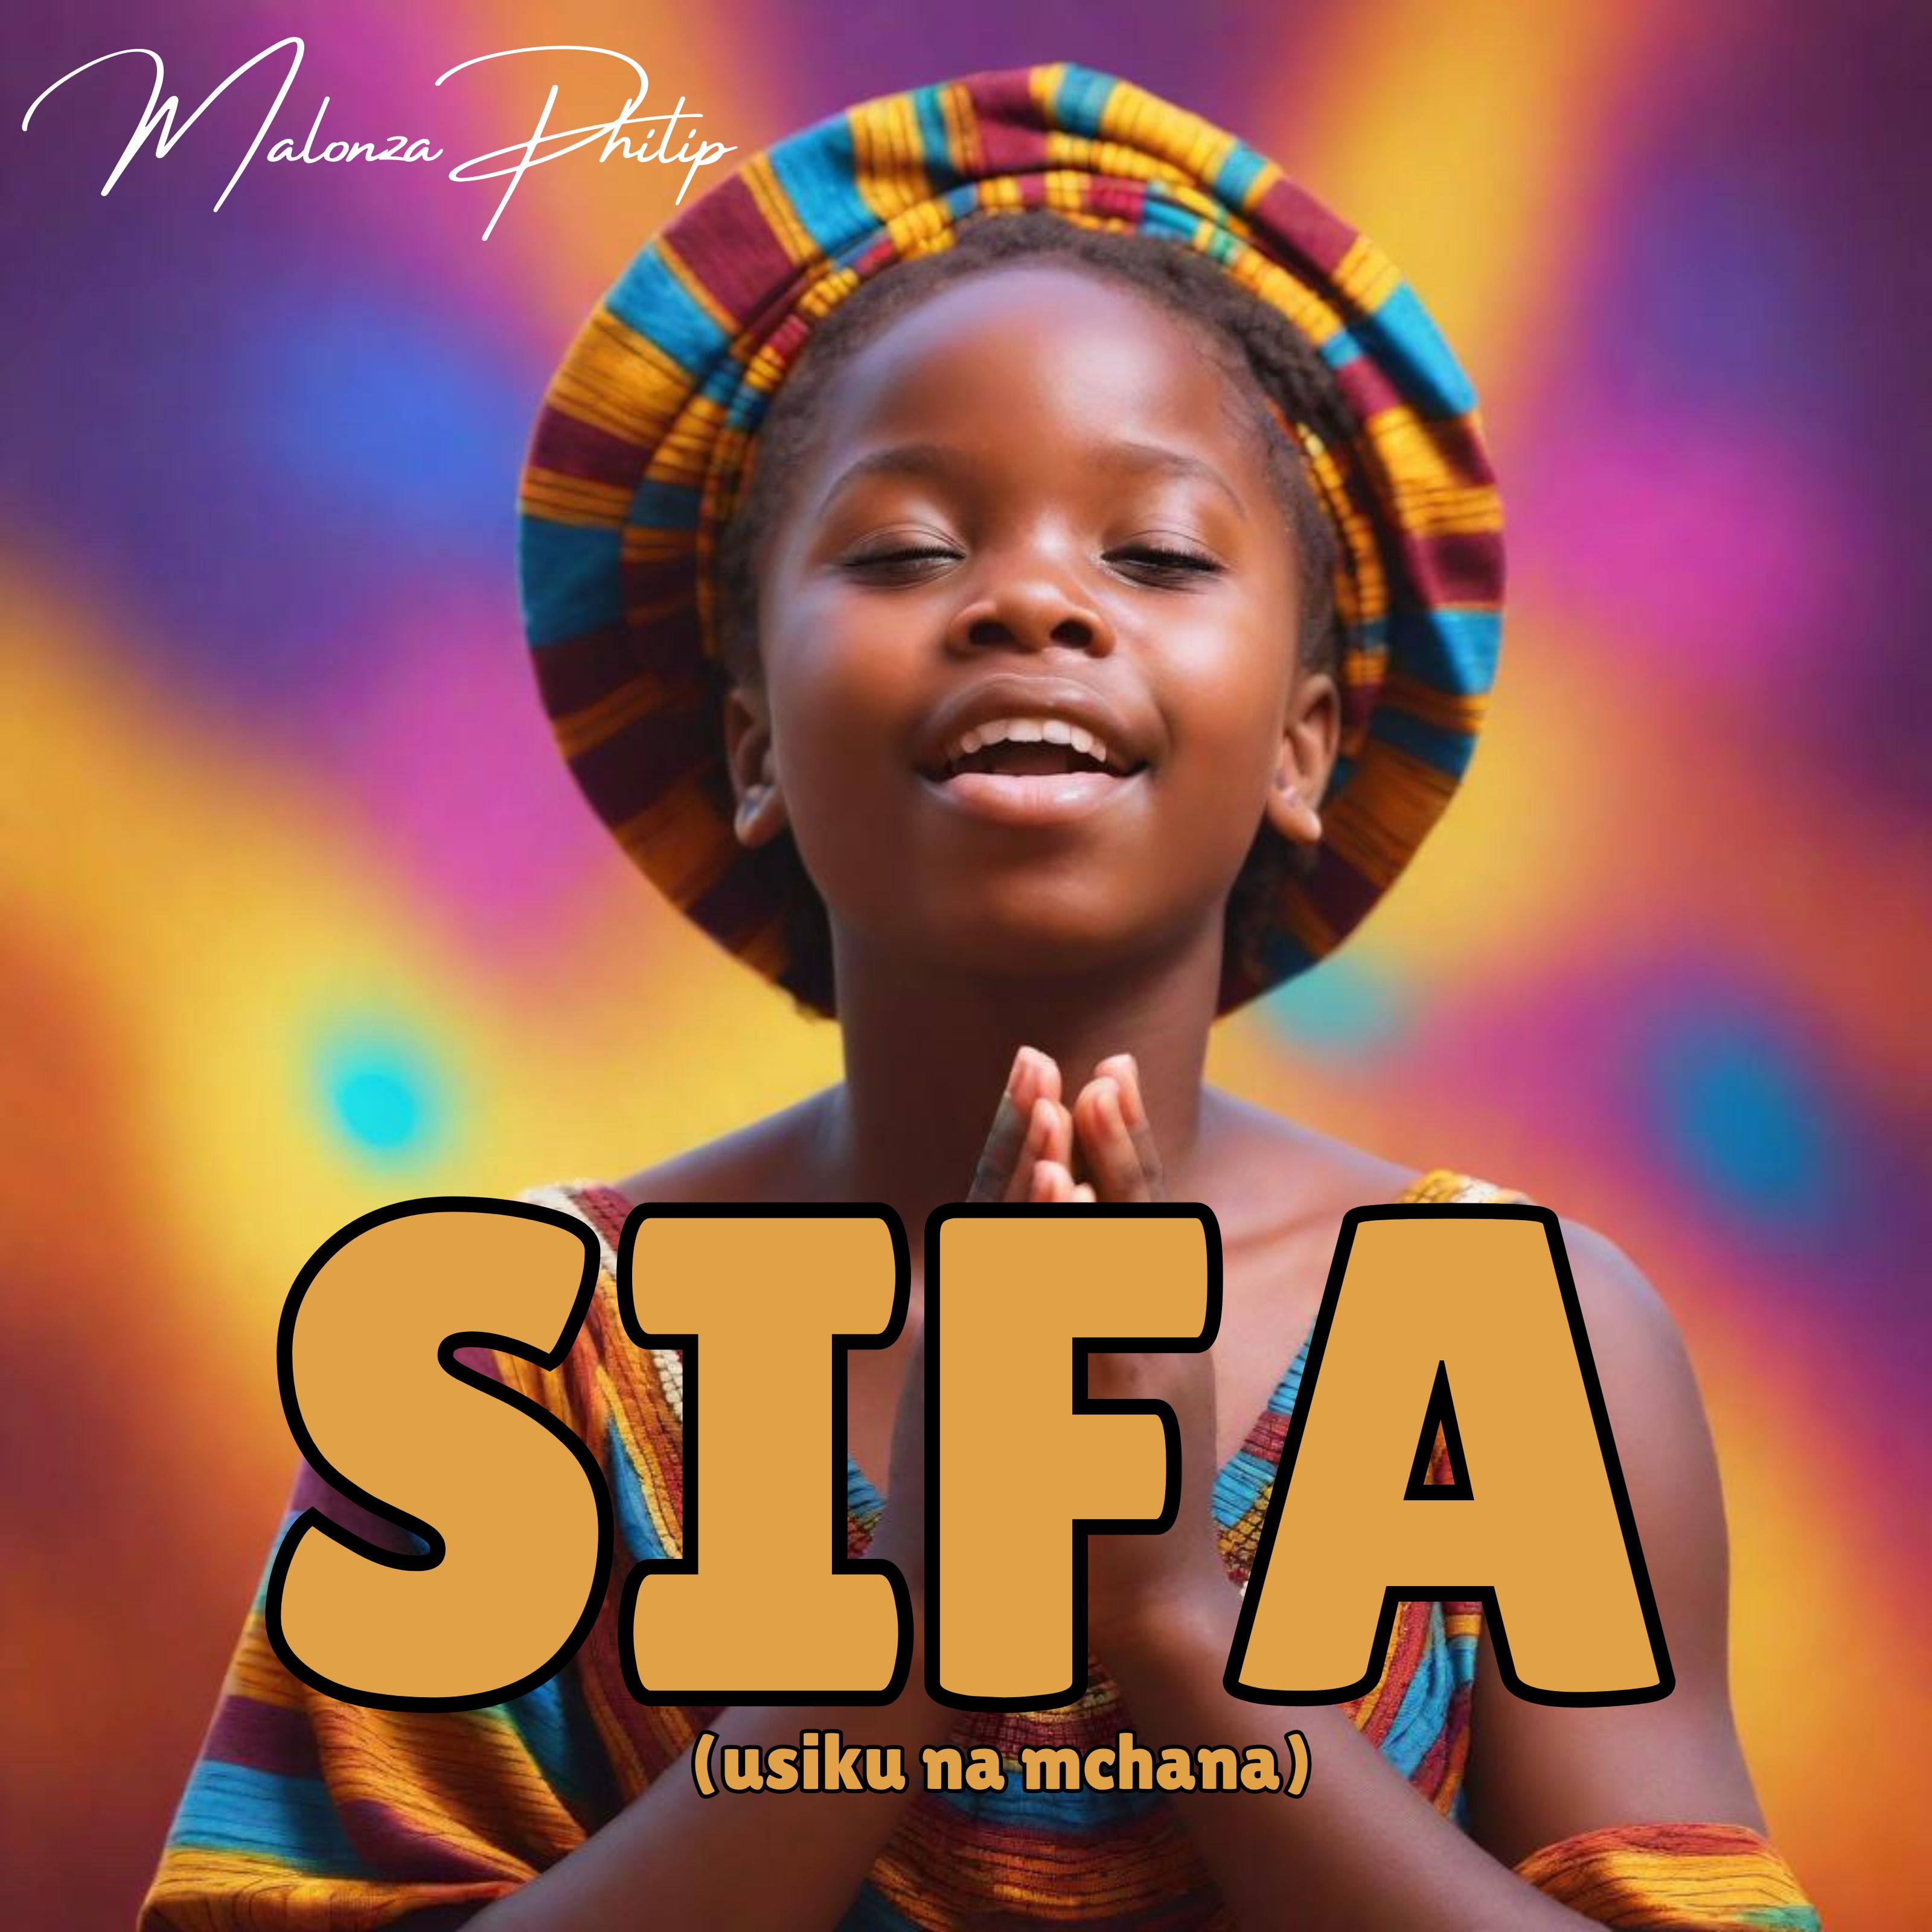 Sifa (Usiku and Mchana)